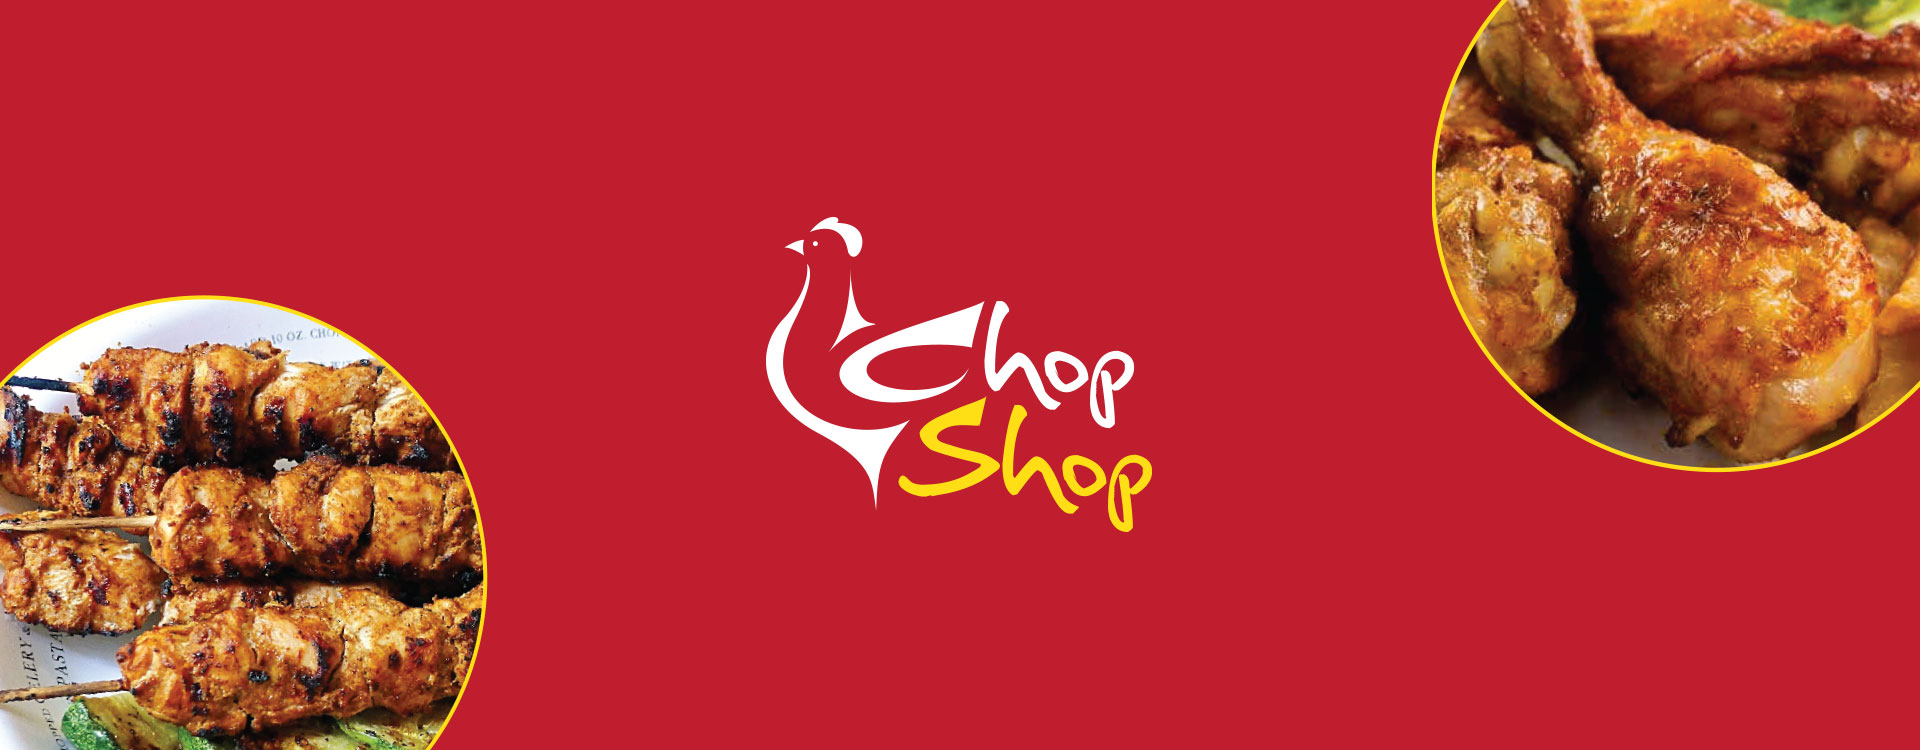 Logo design for chopshop - meat shop